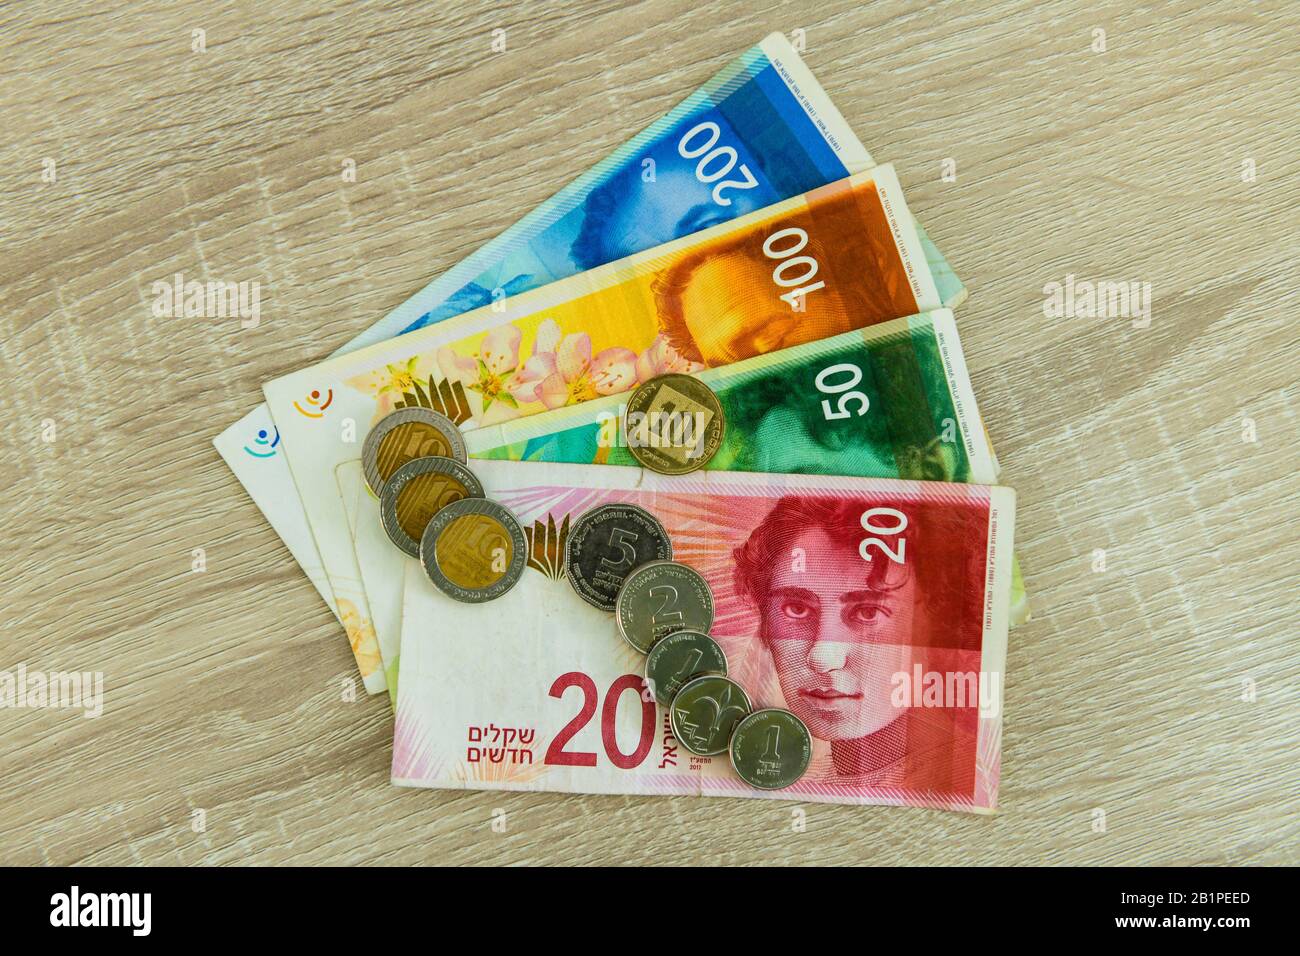 Geld, Scheine Münzen, Schekel, Israel Stock Photo